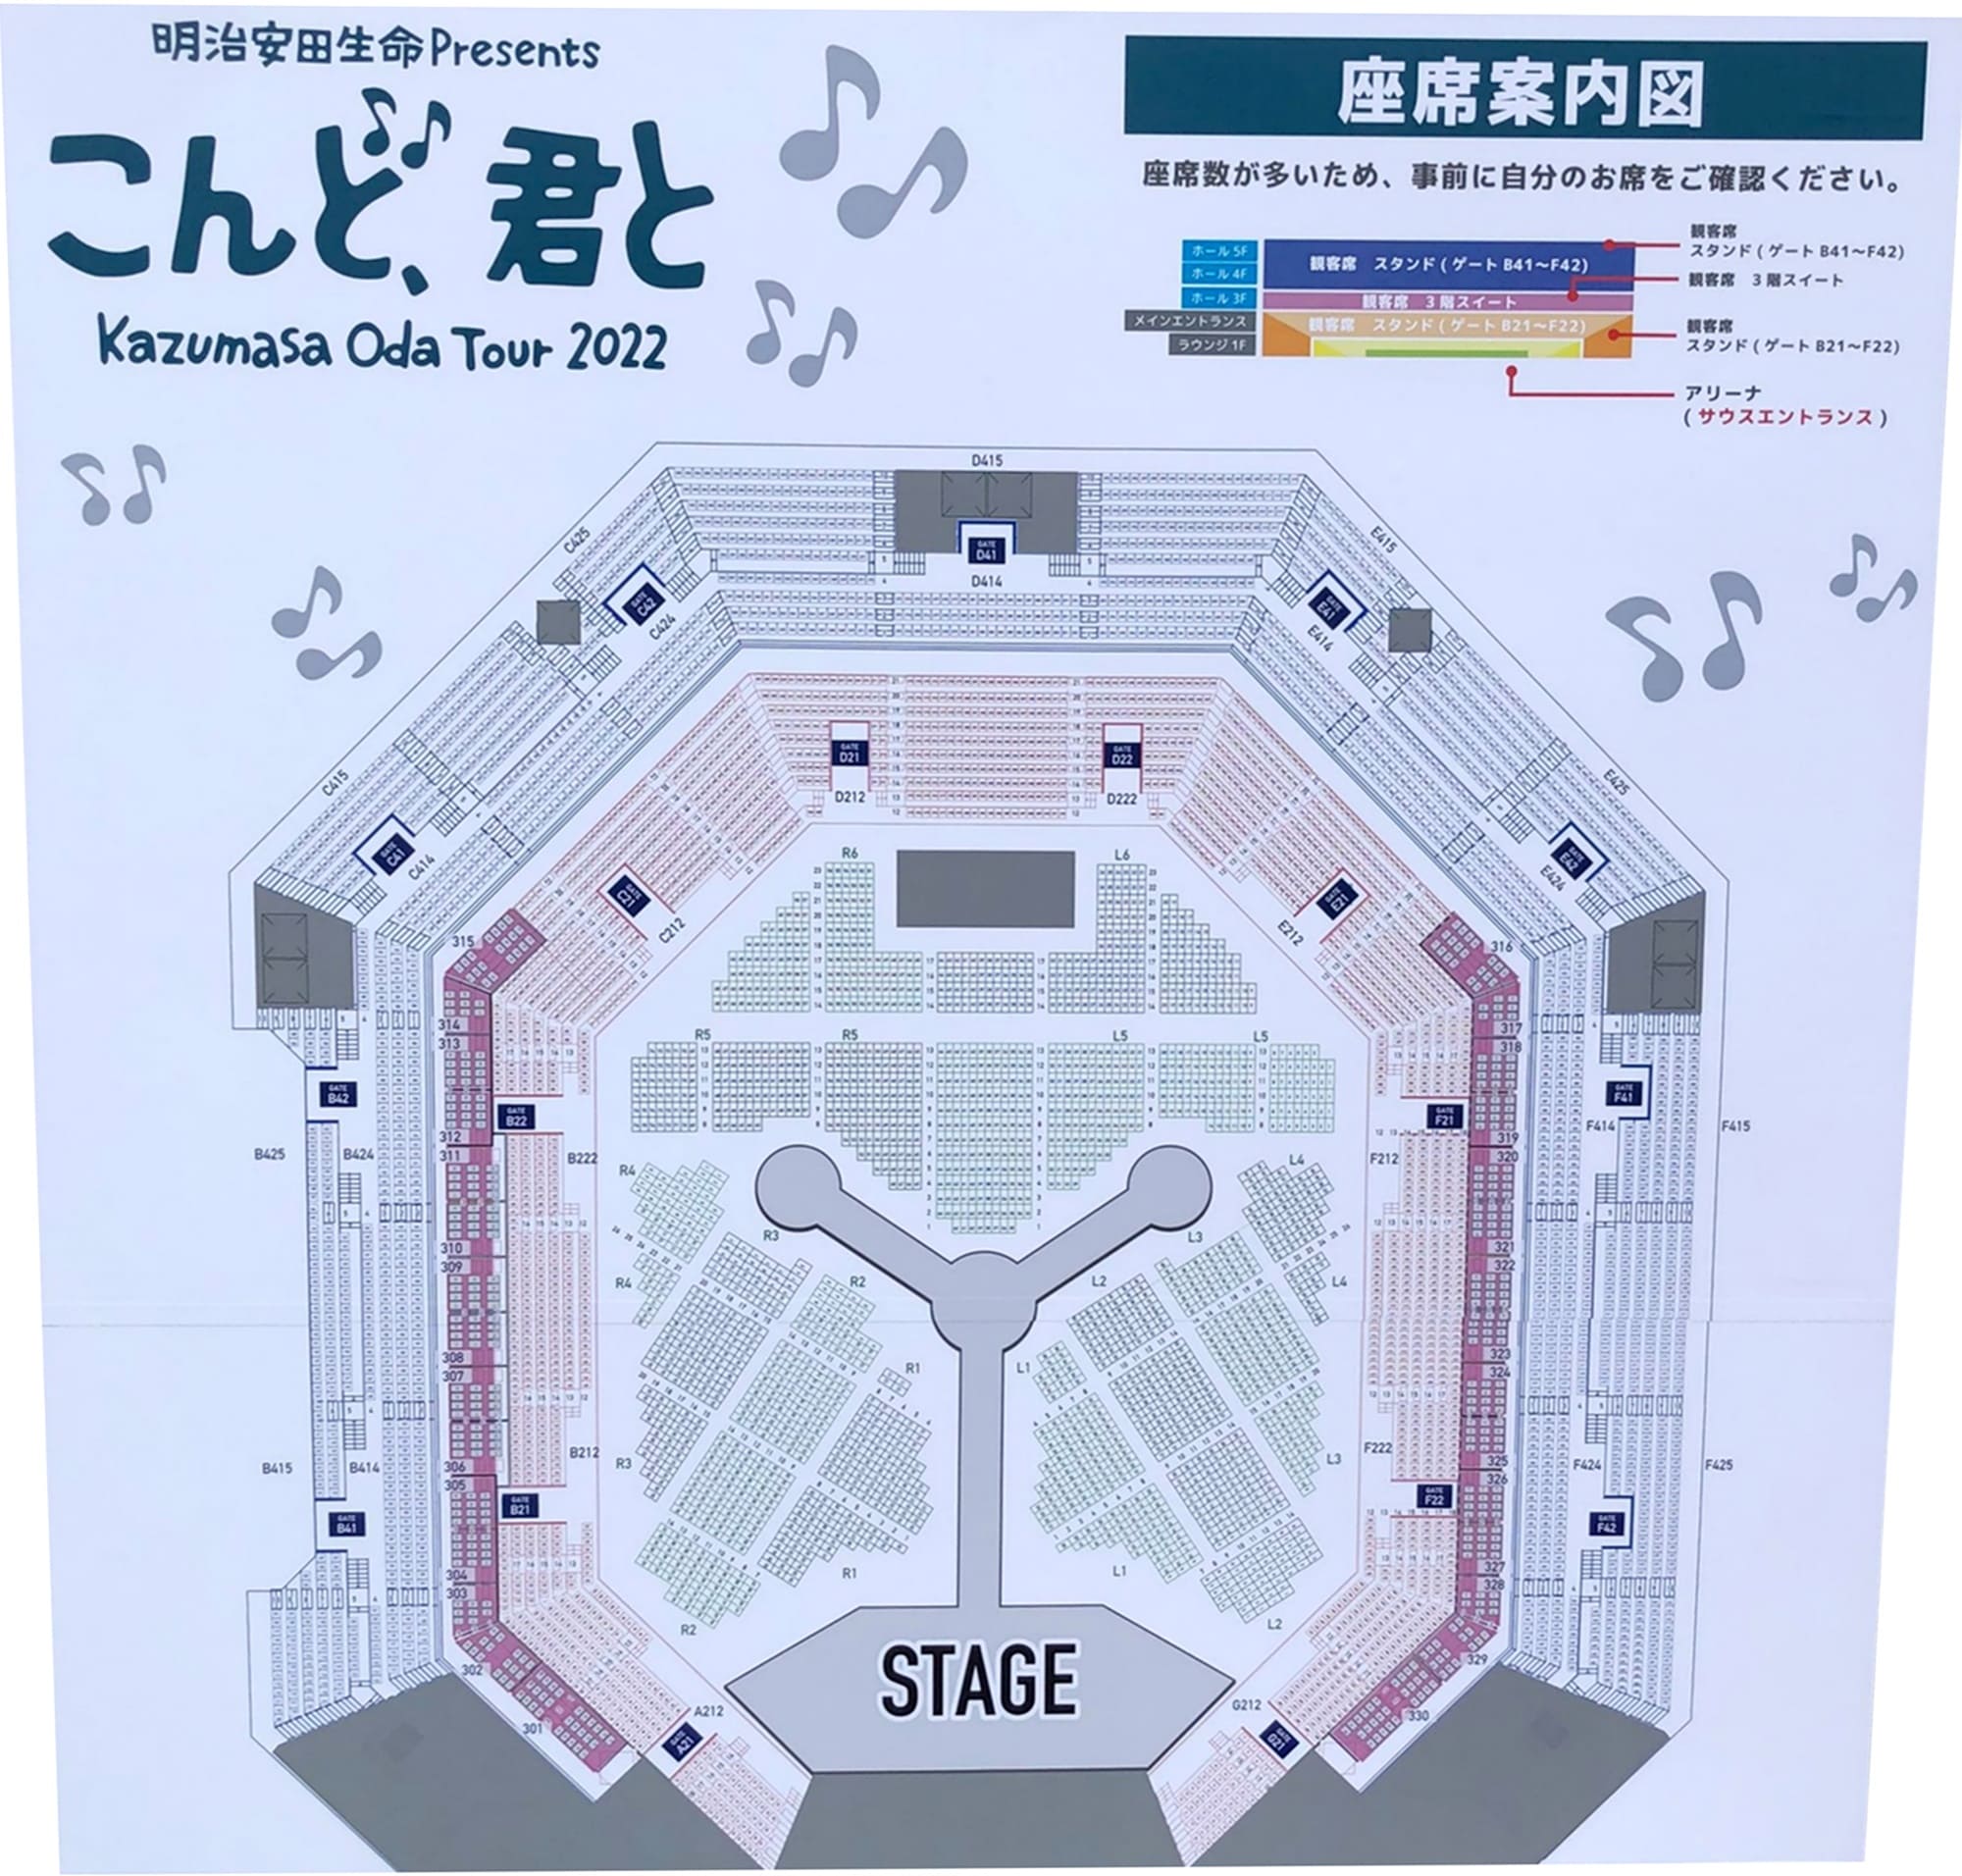 小田和正 明治安田生命 Presents Kazumasa Oda Tour 2022 「こんど、君と」 沖縄アリーナ 座席表・アリーナ構成